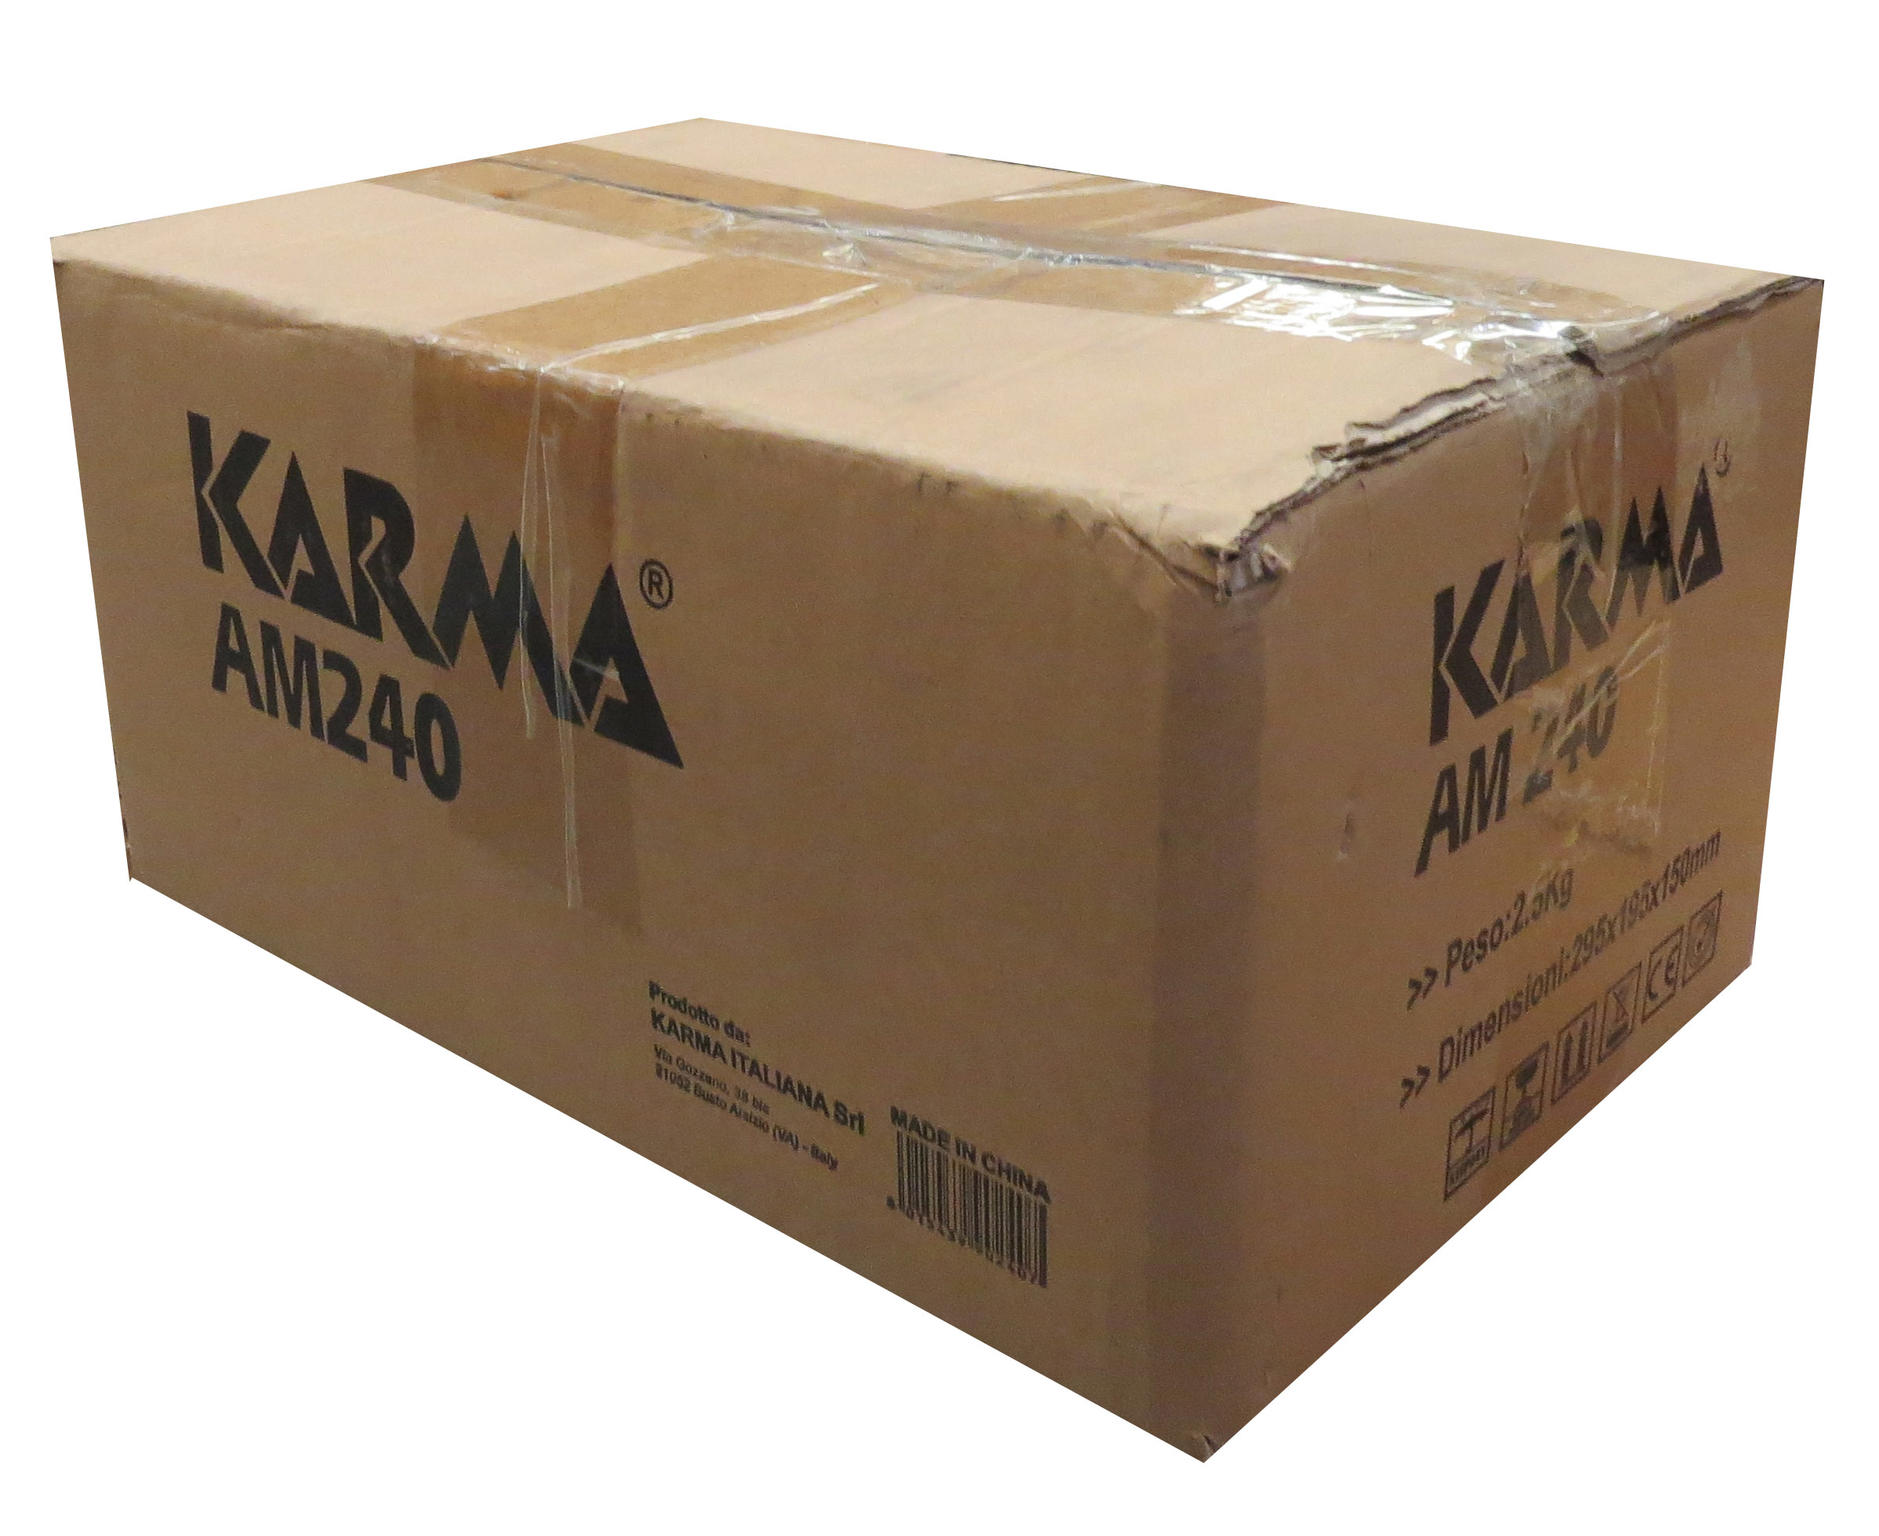 Karma AM 240